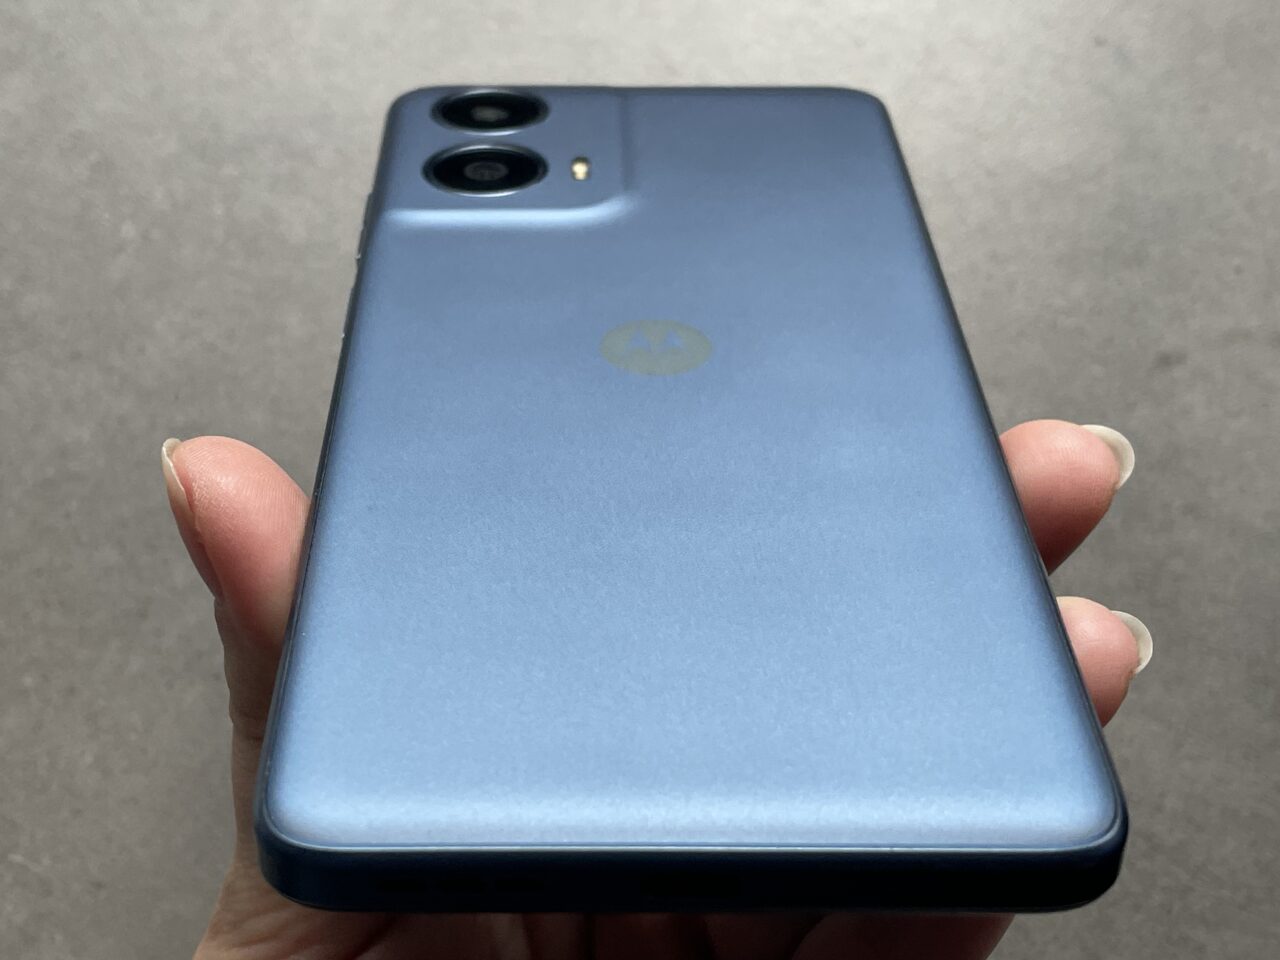 Tylny widok niebieskiego smartfona trzymanego w dłoni z widocznym logo producenta i podwójnym aparatem fotograficznym.